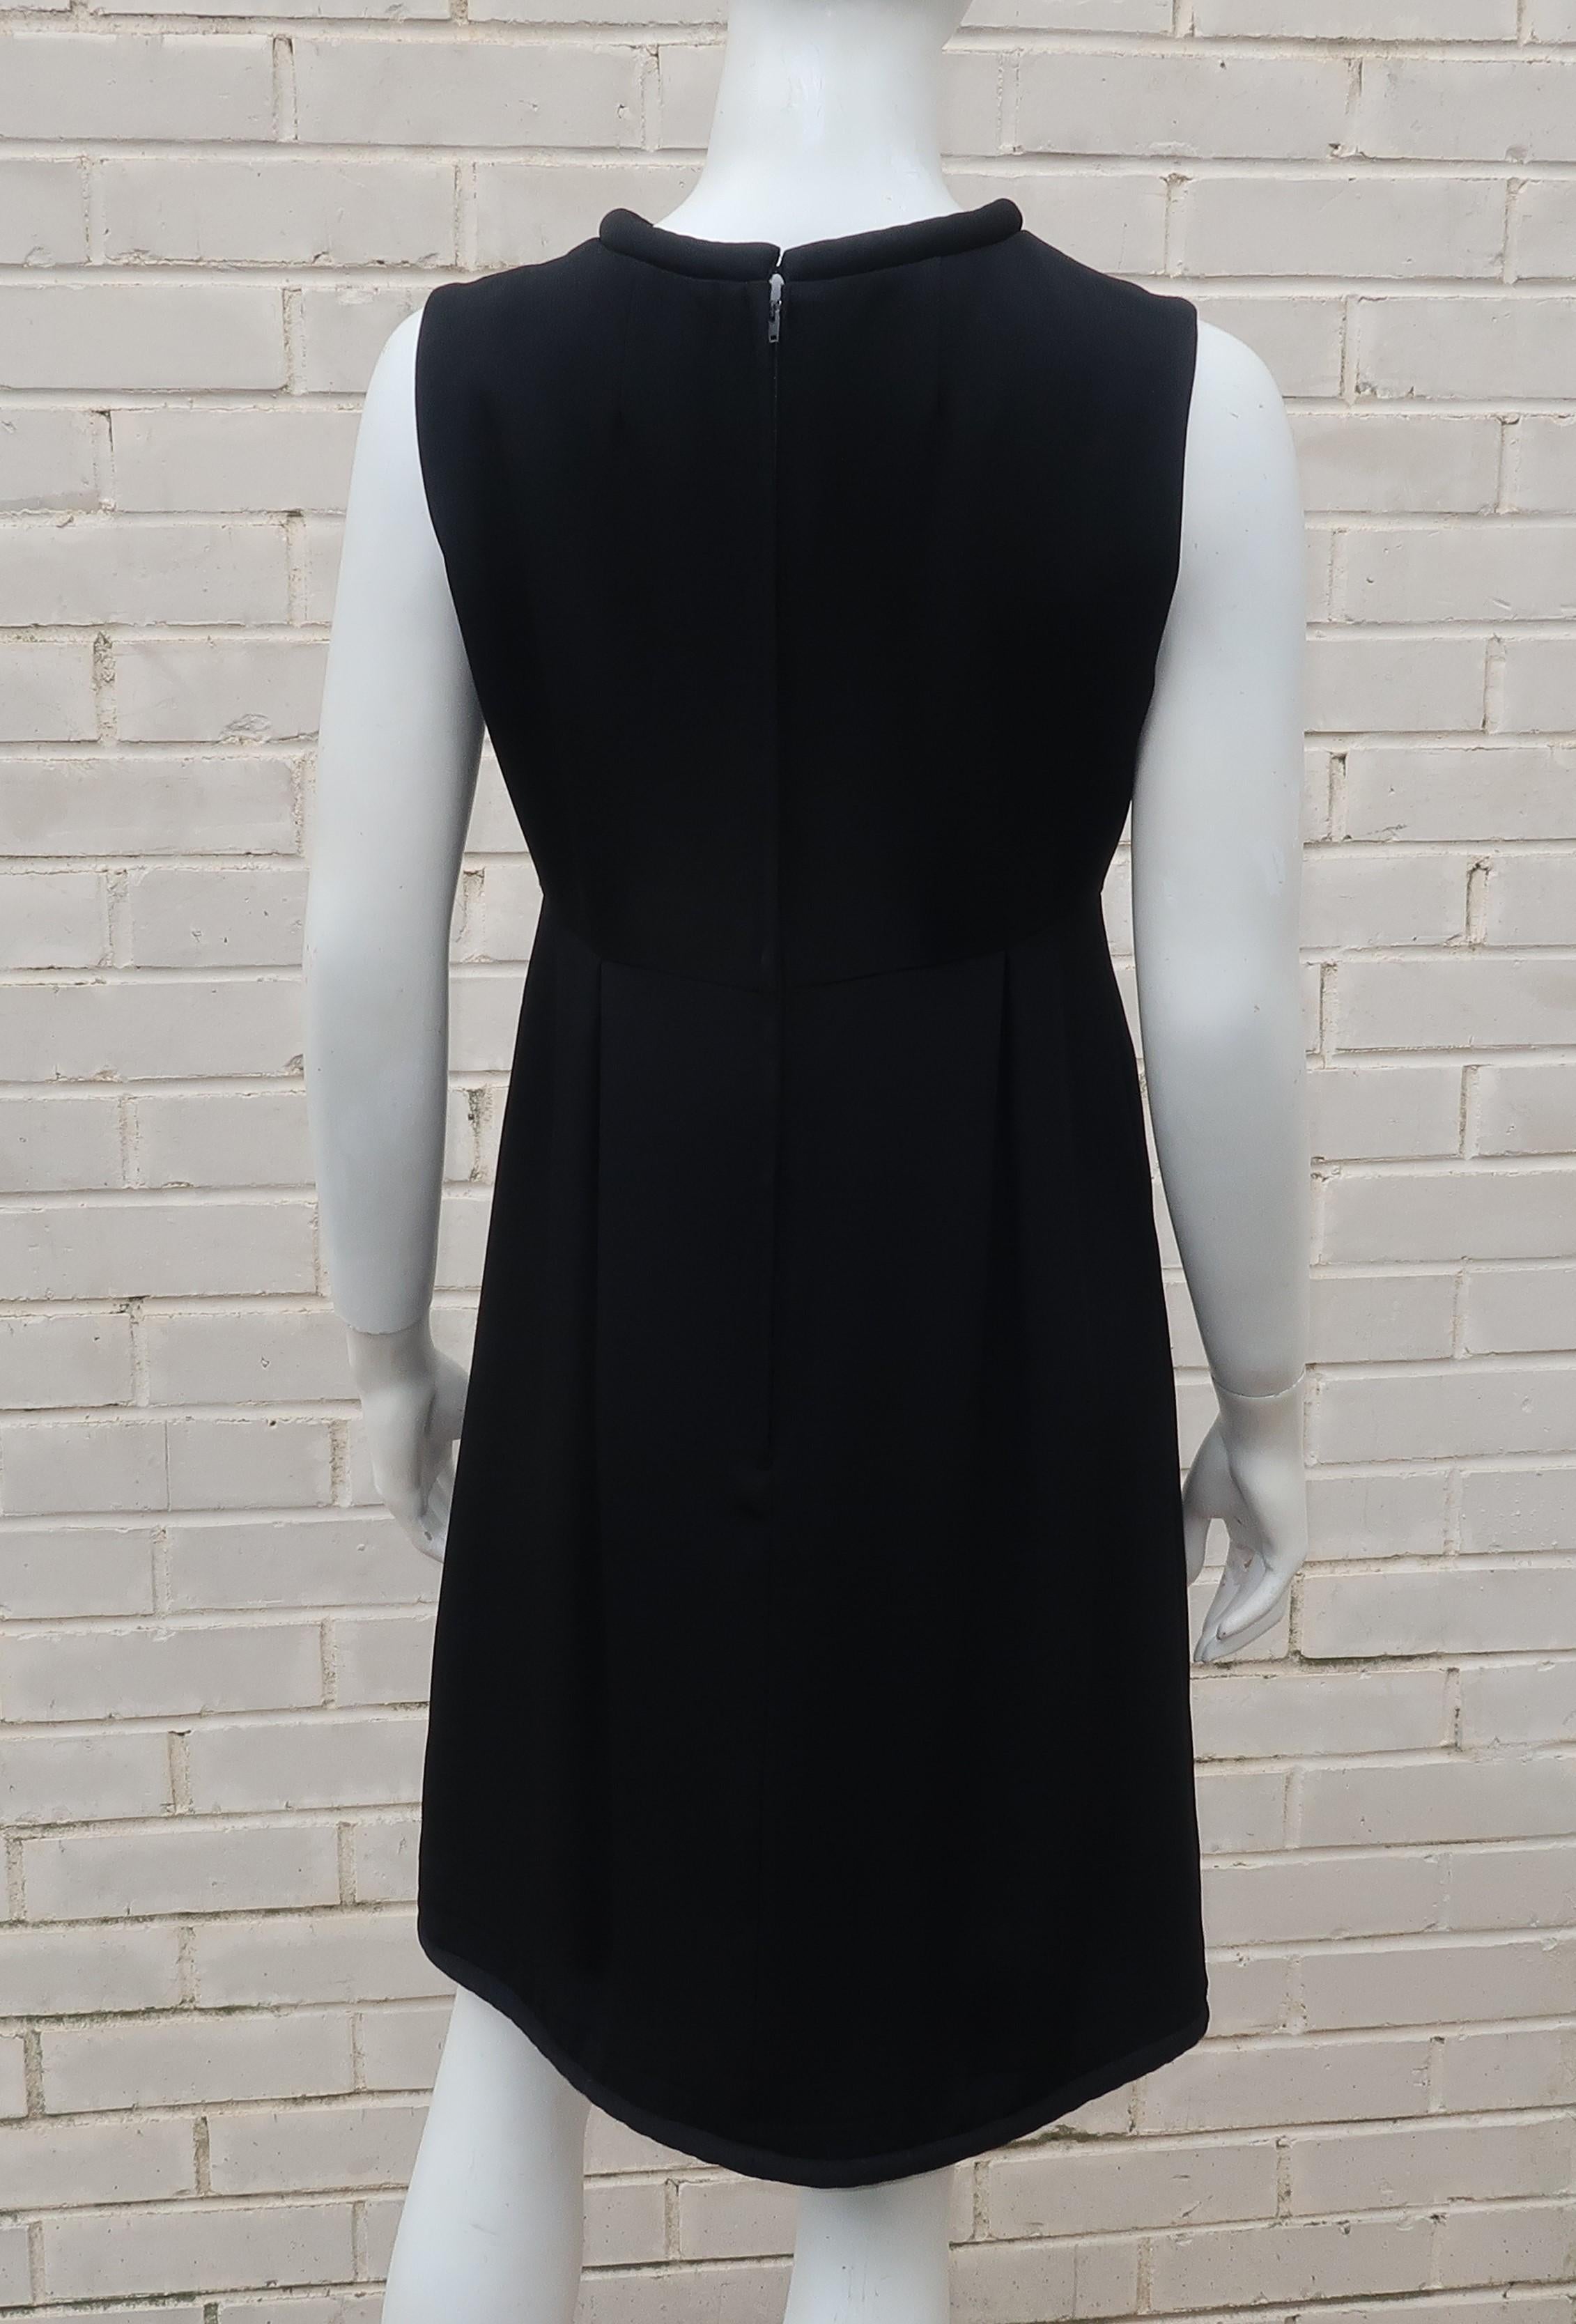 Saks Fifth Avenue - Petite robe noire avec boucles en strass, années 1960 en vente 4